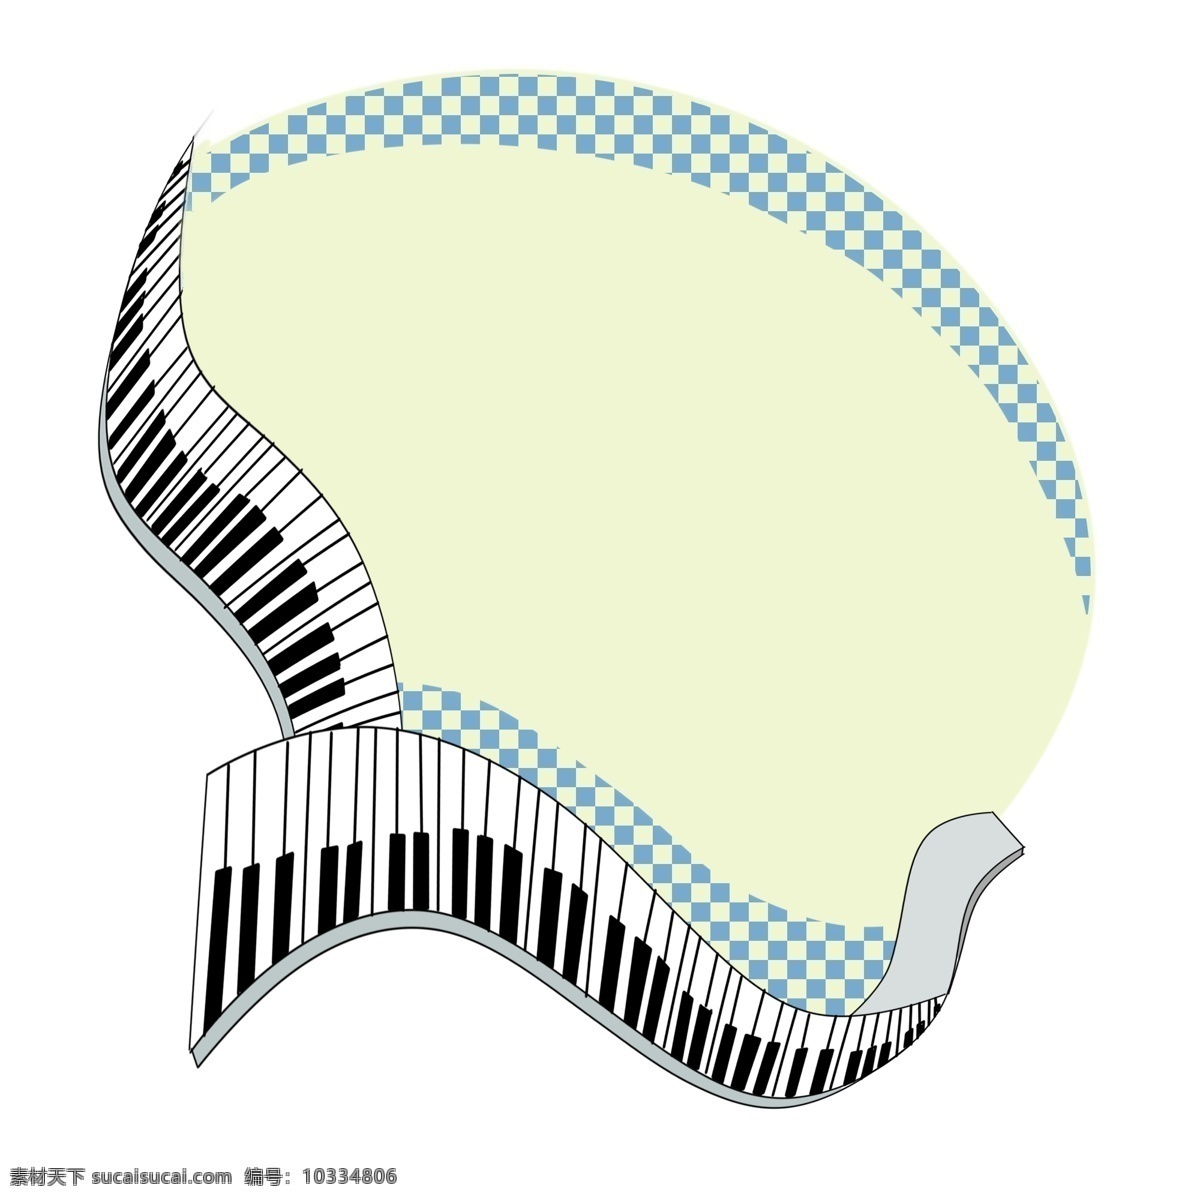 音乐 元素 钢琴 黑白 琴键 相框 手绘 乐器 画框 黑白琴键 边框 免抠 格子 小清新